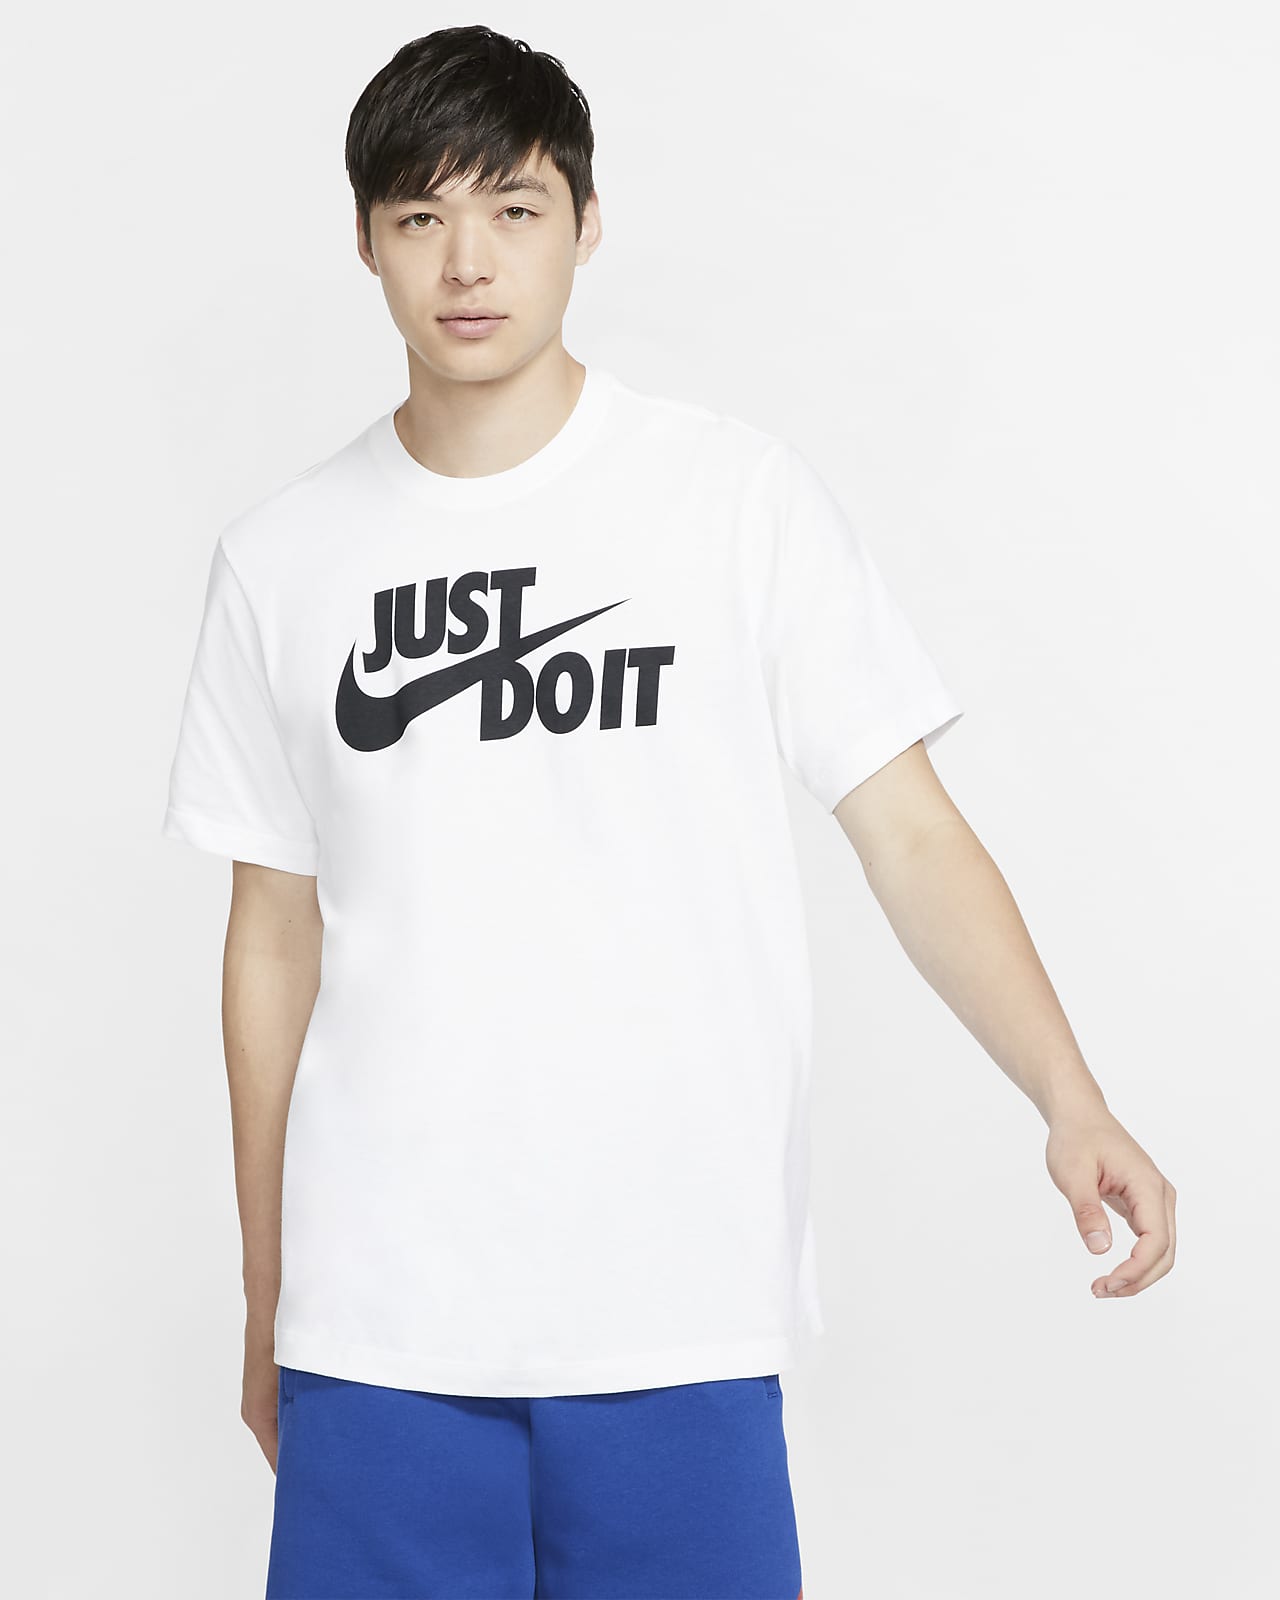 Nike Sportswear JDI - Hombre. Nike ES